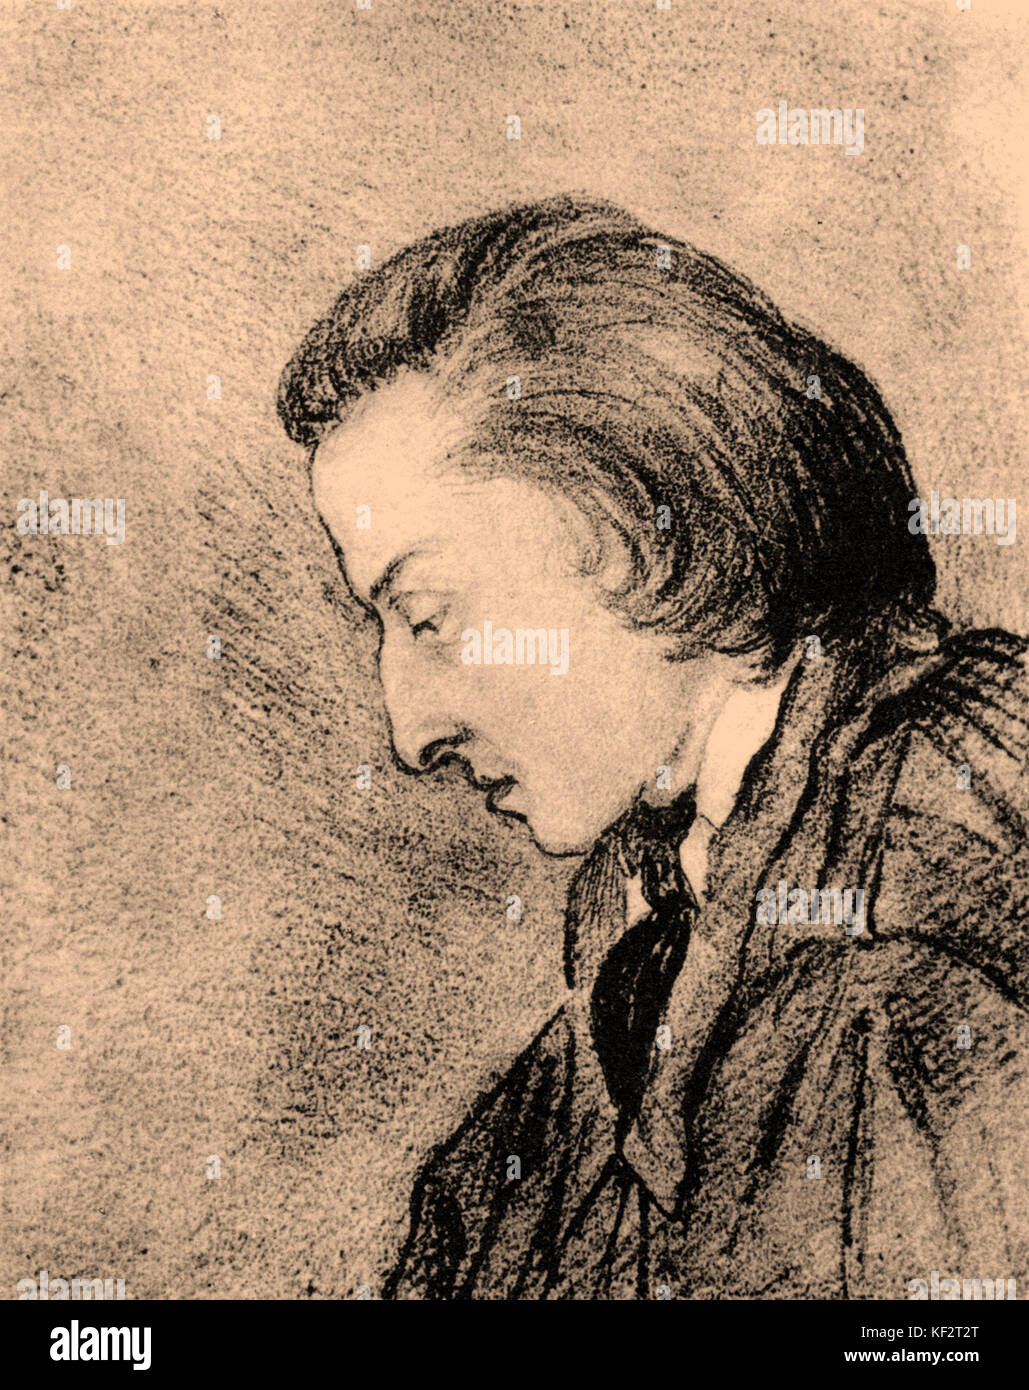 Frédéric Chopin, Profil Portrait von George Sand. Zeichnung. Polnischen Komponisten Frédéric Chopin (1810 - 1849). Stockfoto